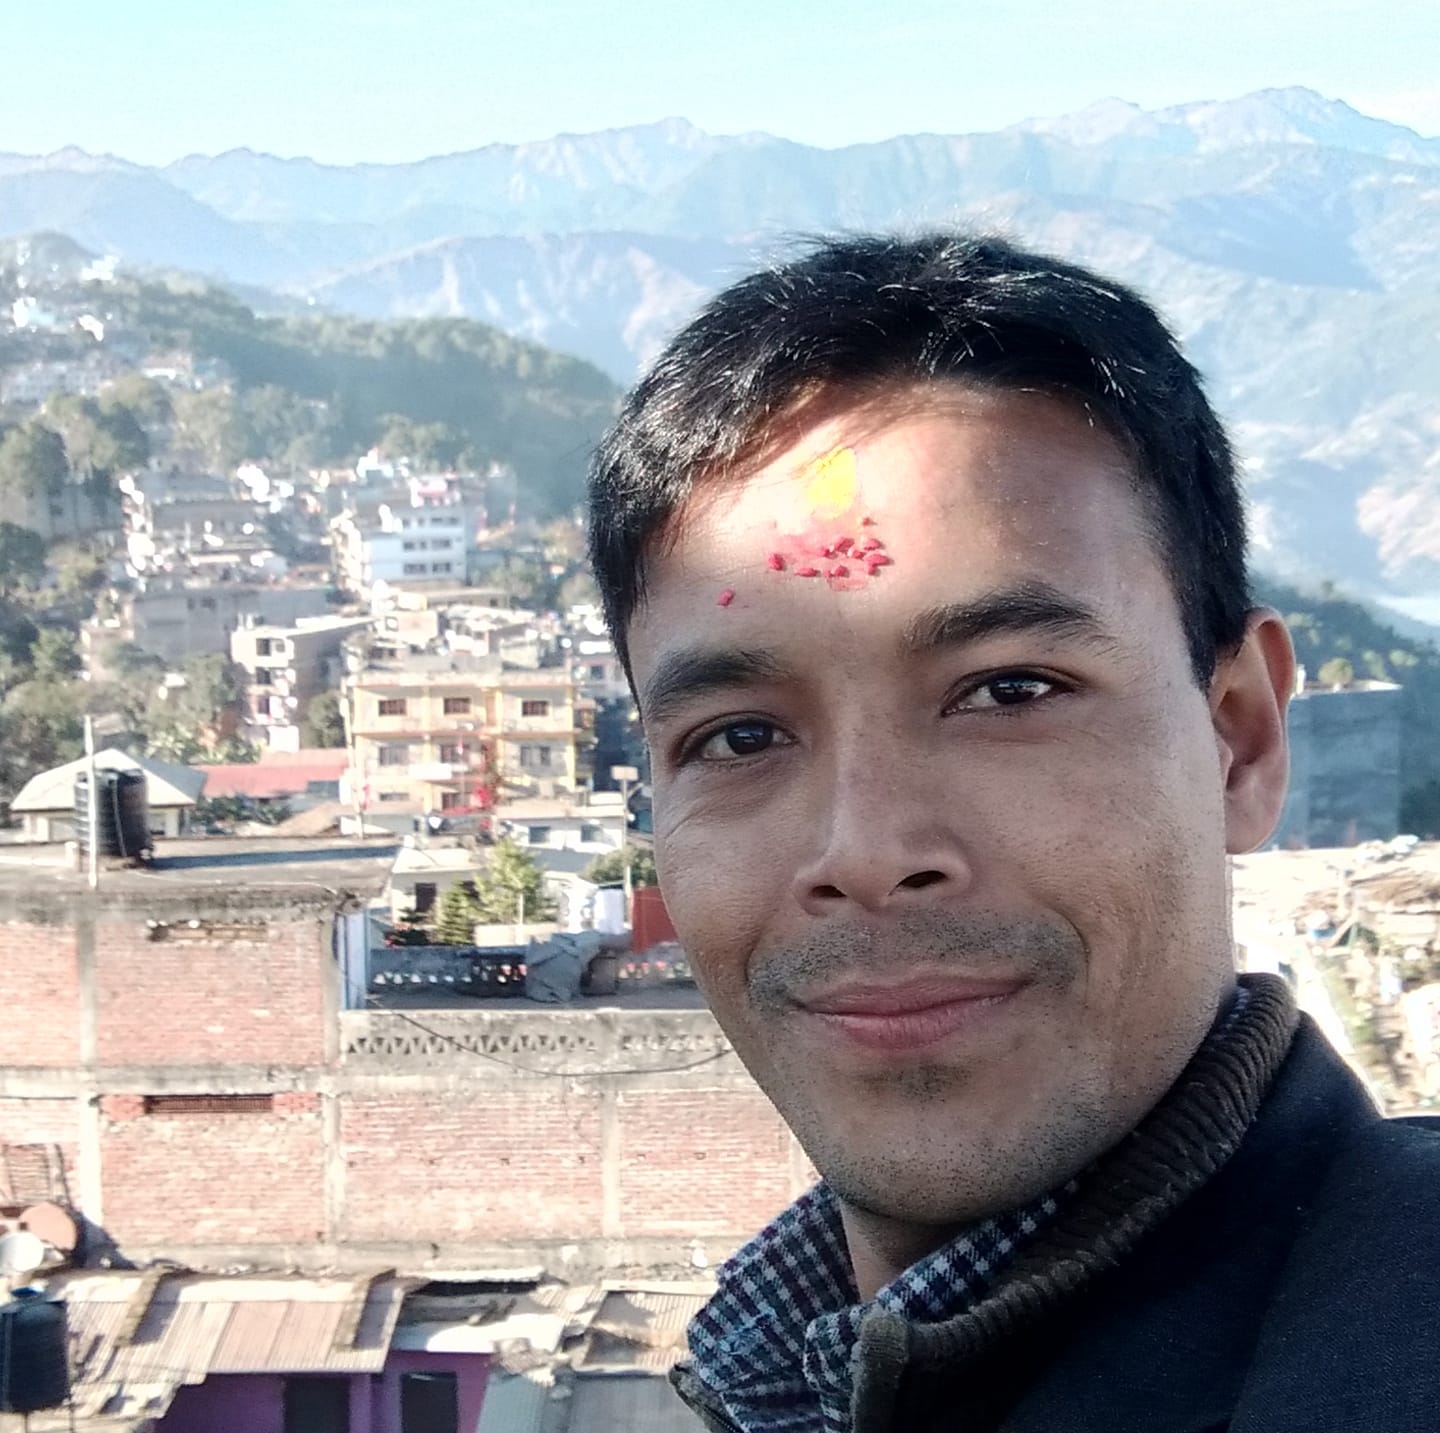 समाचार लेखेको आधारमा कांग्रेस कार्यकर्ताद्वारा नेपाल प्रेसकर्मीको घर घेराउ, ज्यान मार्ने धम्की